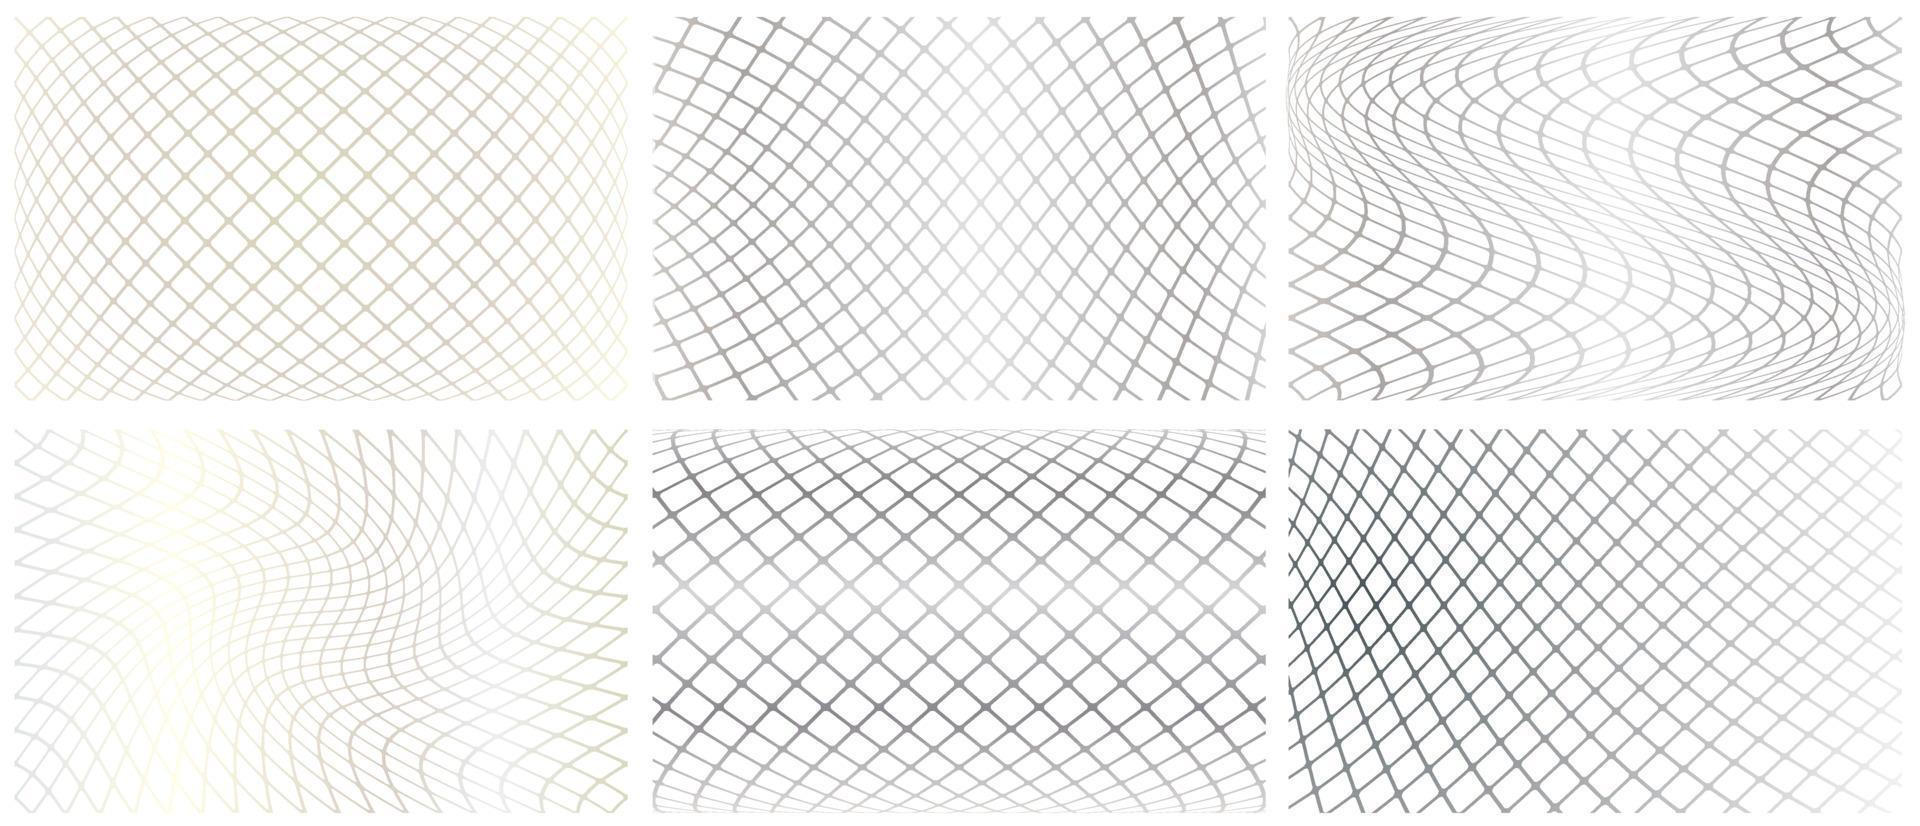 de textuur van de mesh-structuur die op 6 verschillende manieren draait en draait vector